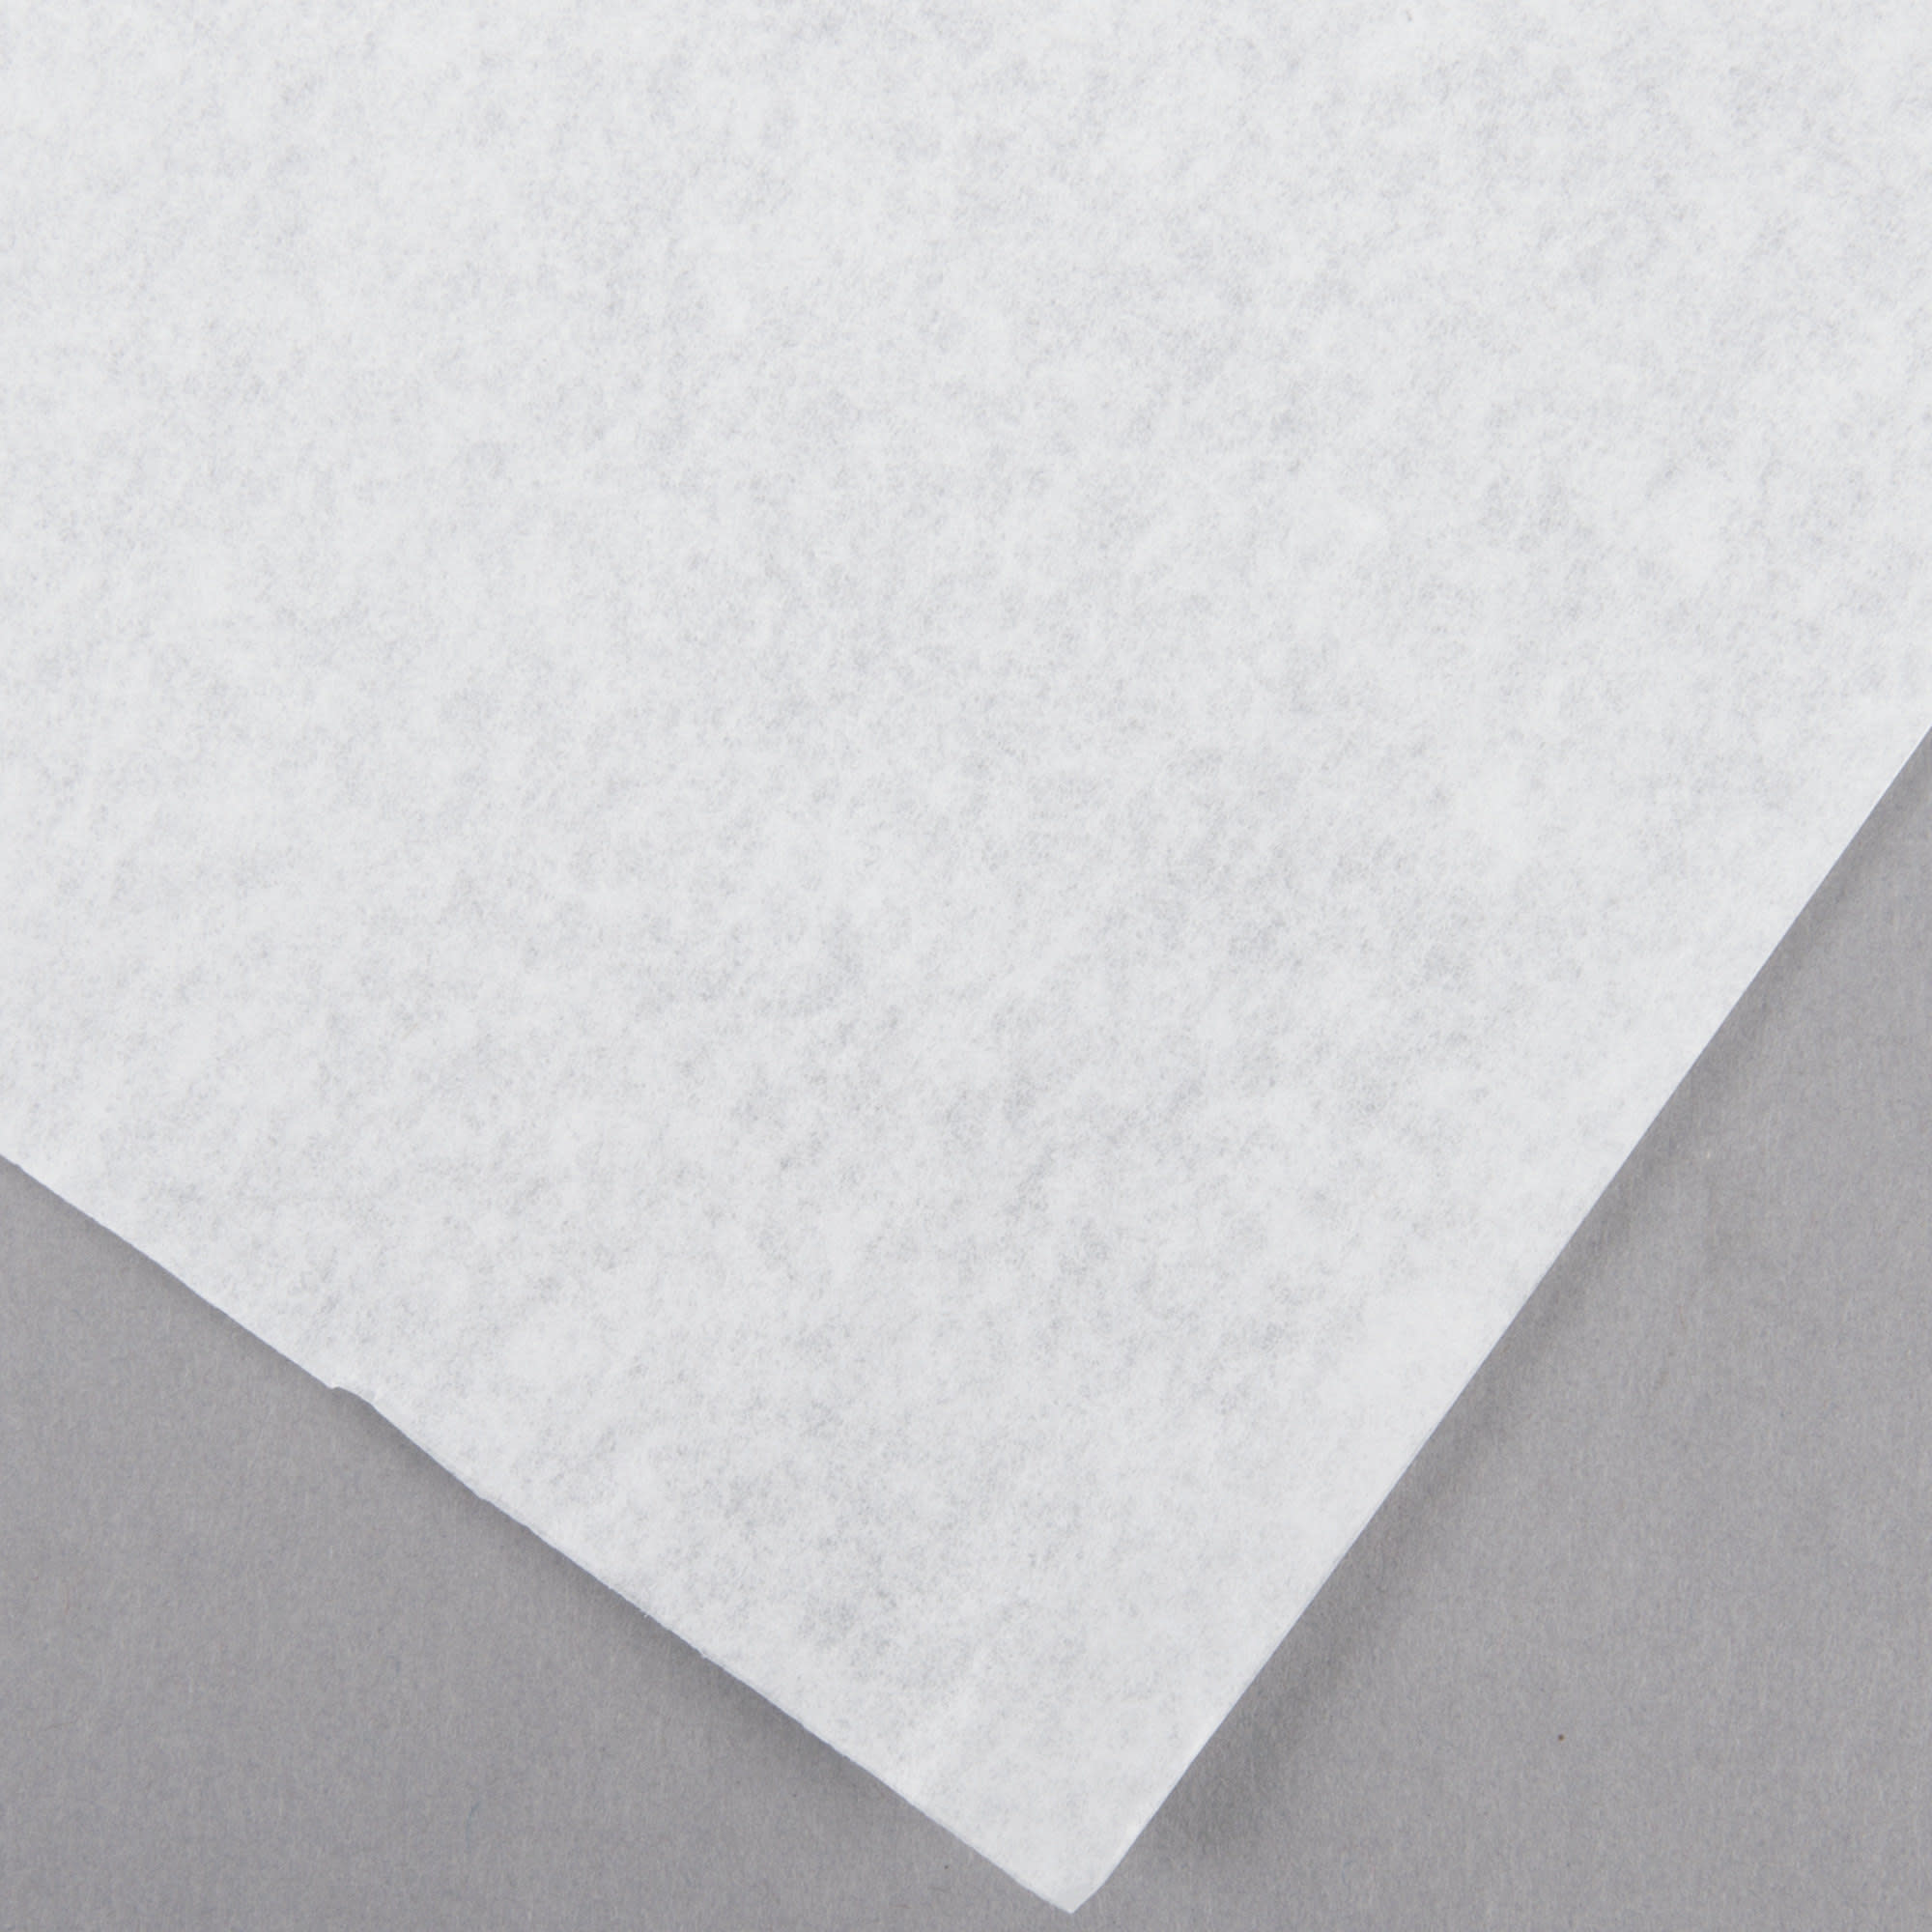 Parchment Paper Half Sheets 